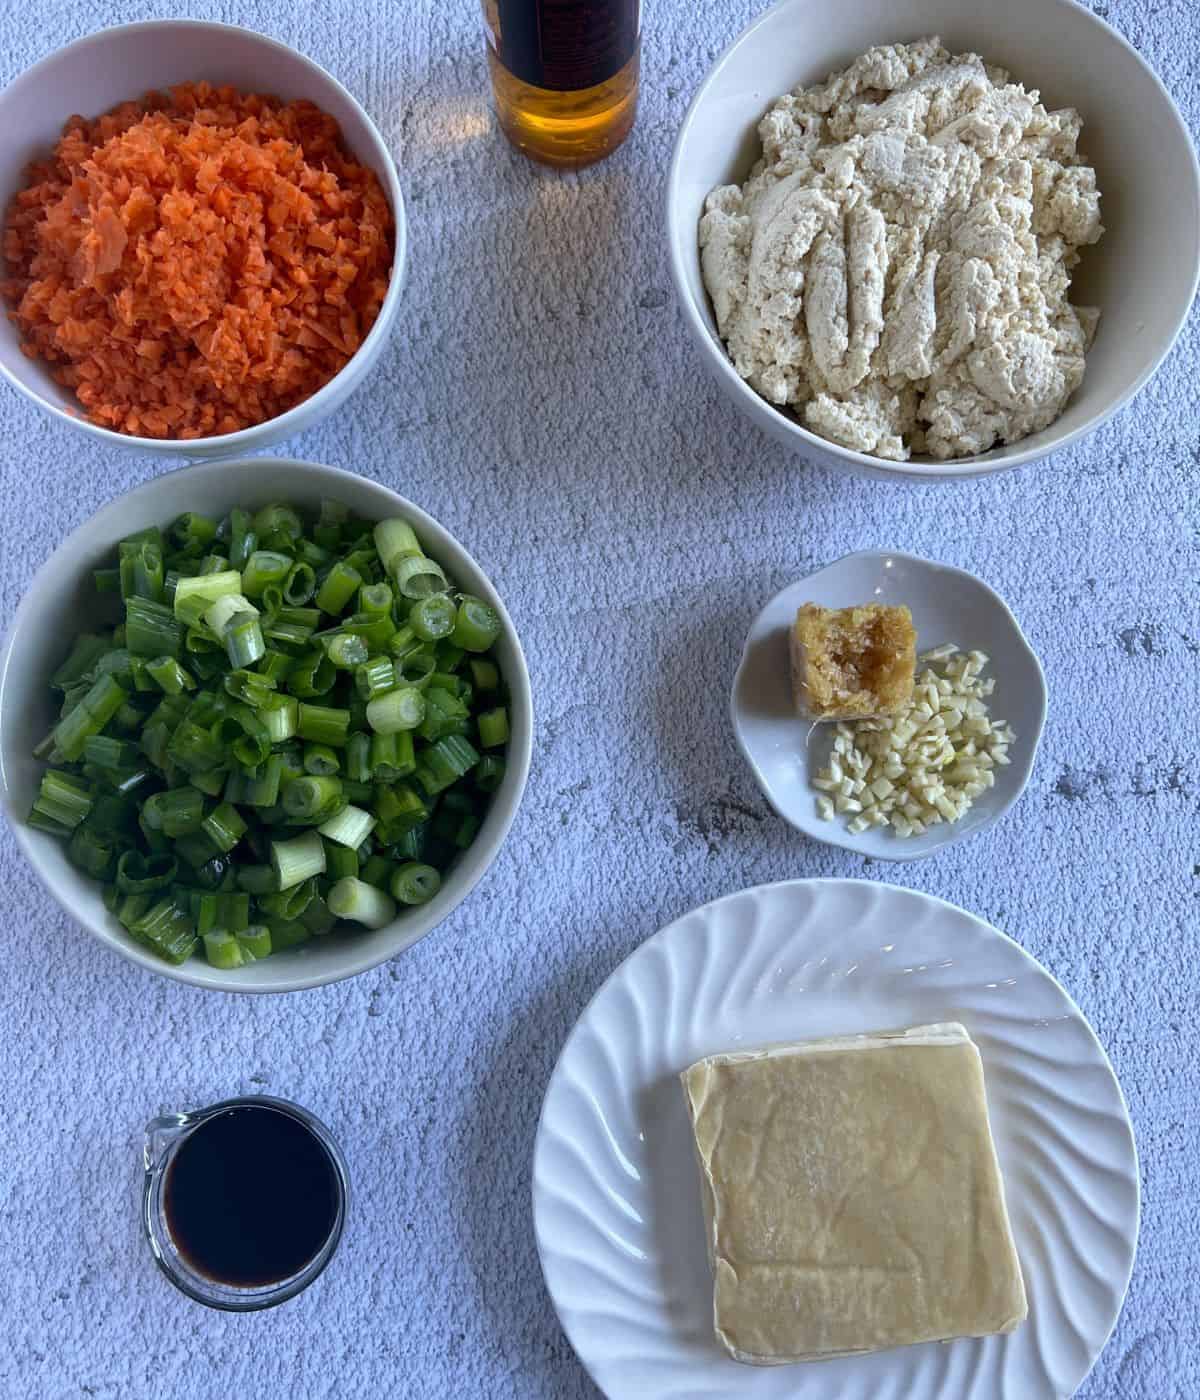 Ingredients for dumplings